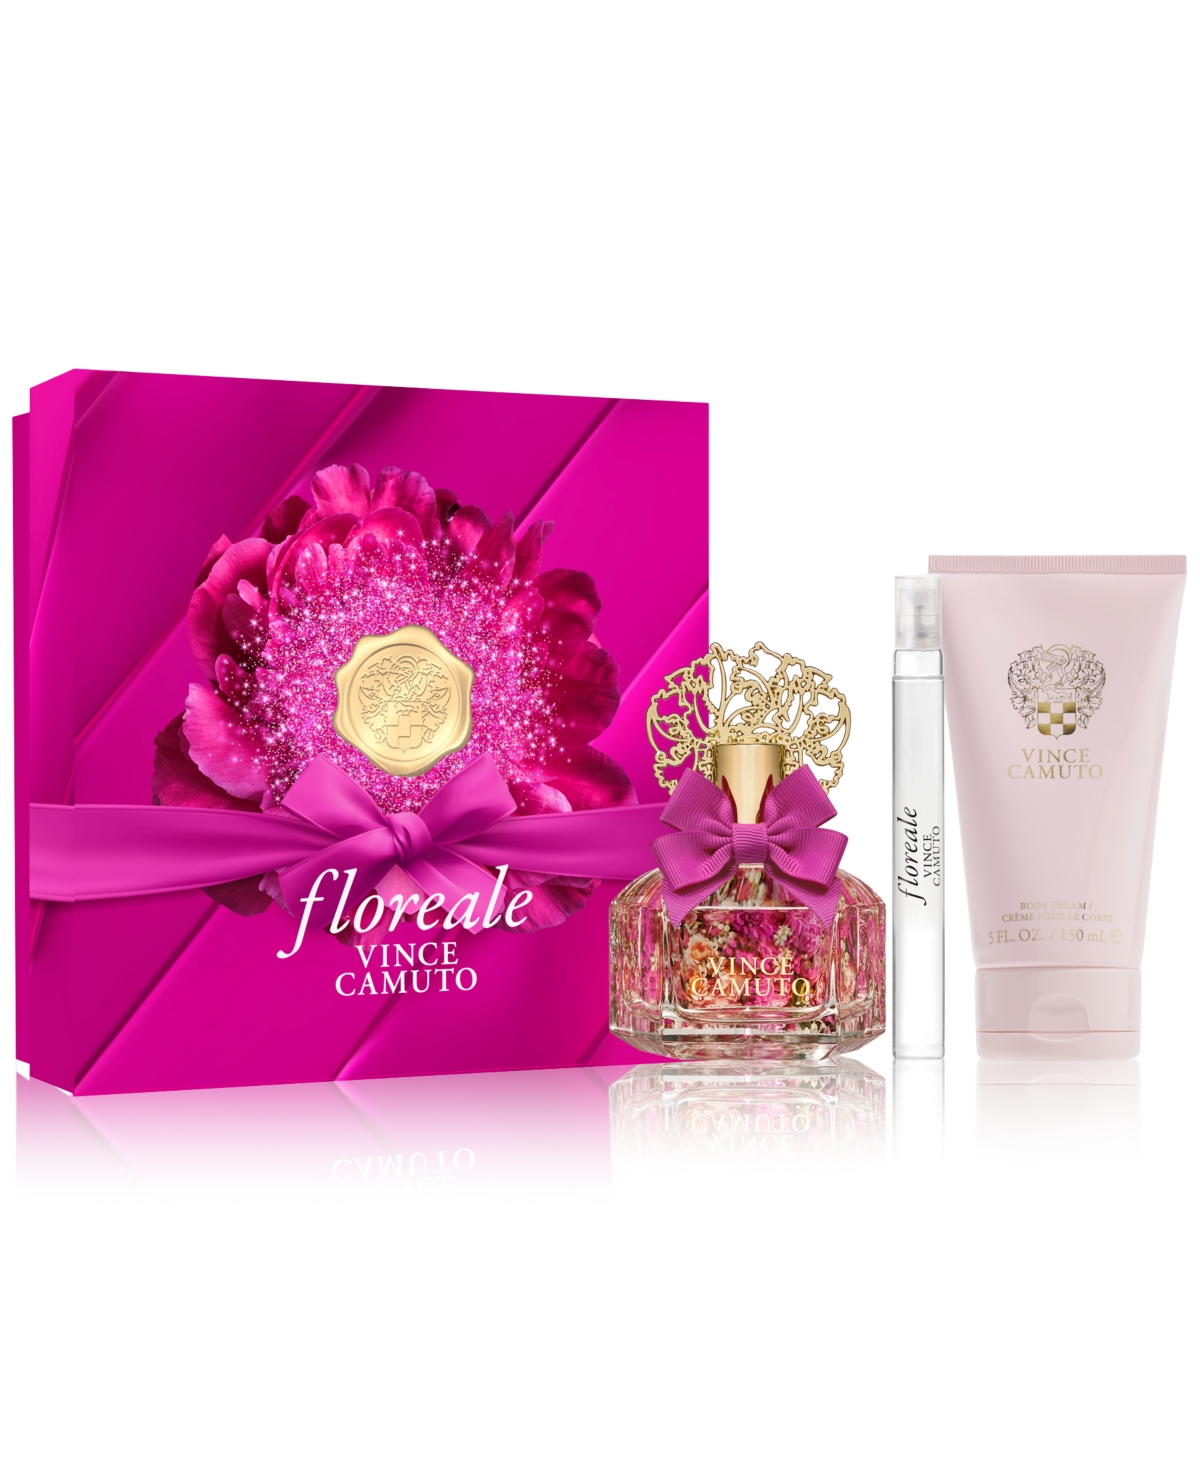 Vince Camuto 3-pc. Floreale Eau De Parfum Gift Set